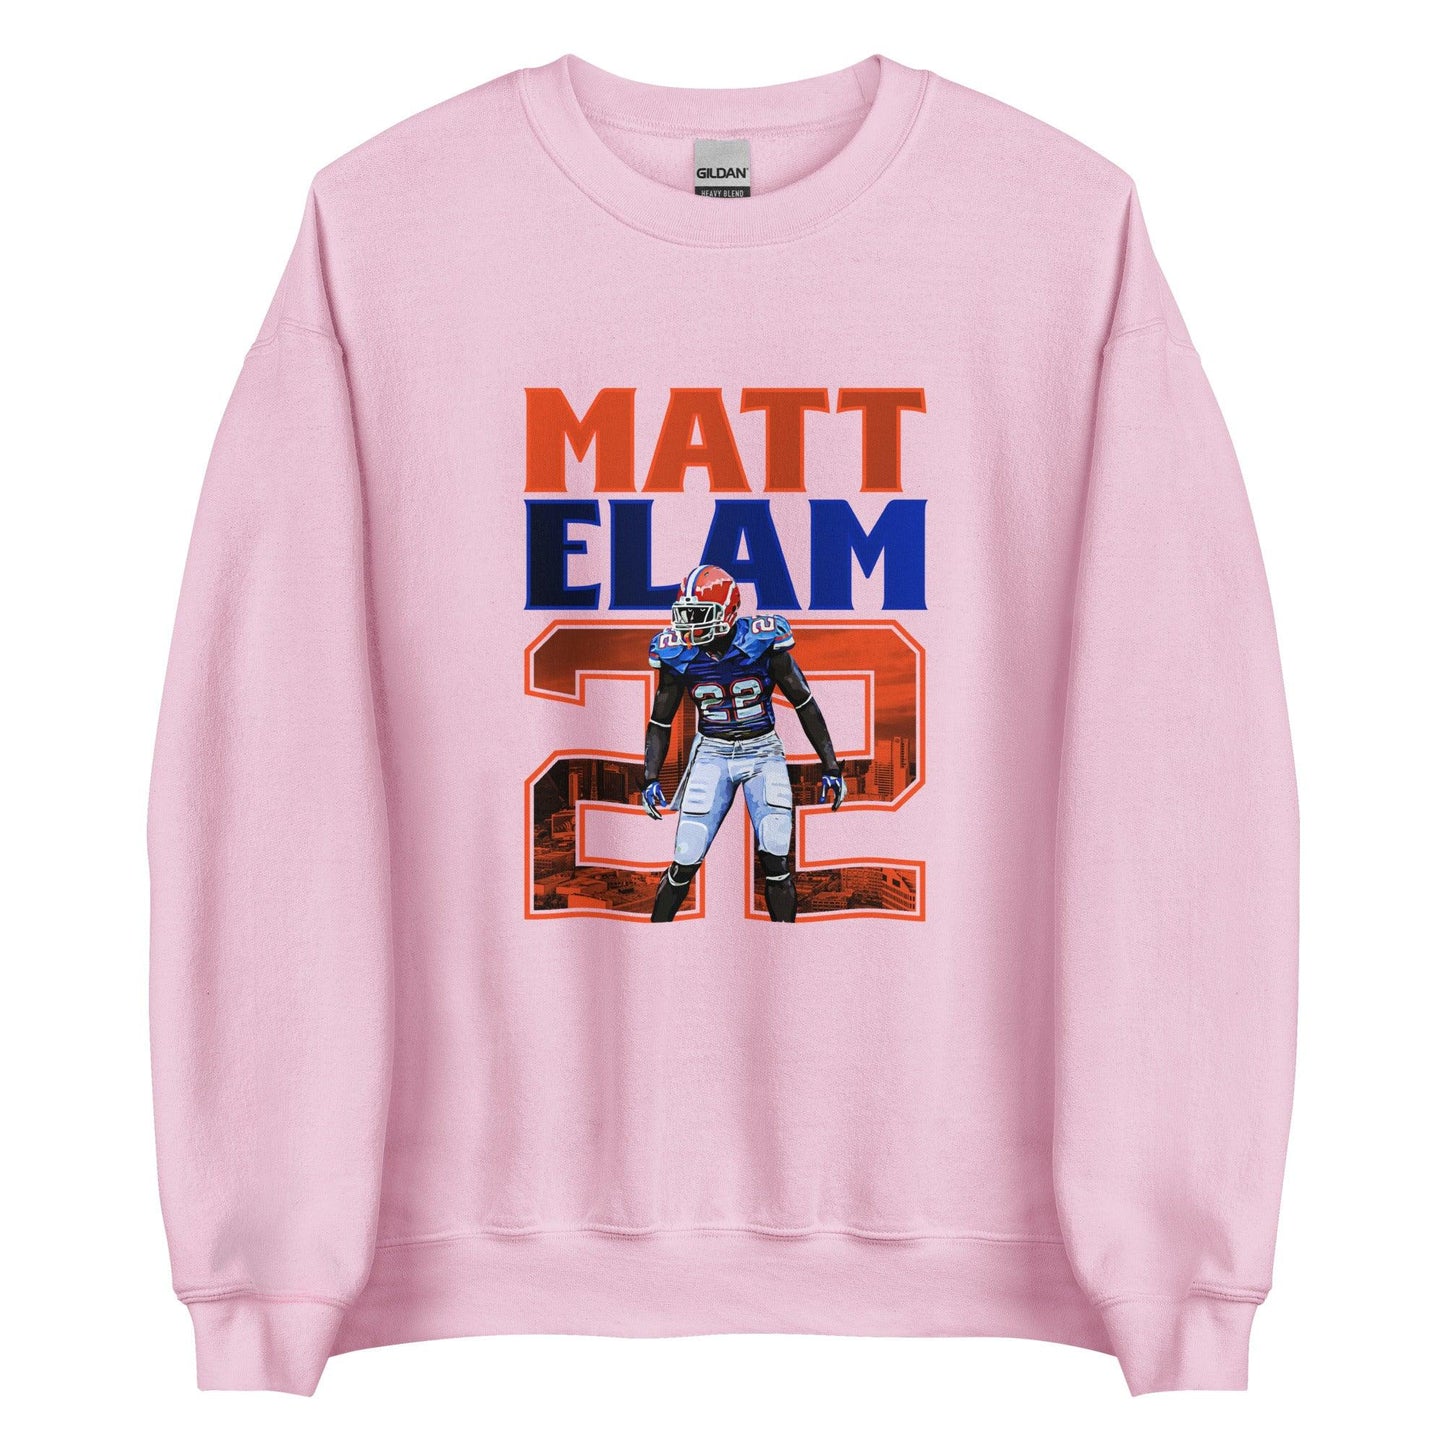 Matt Elam "Gameday" Sweatshirt - Fan Arch